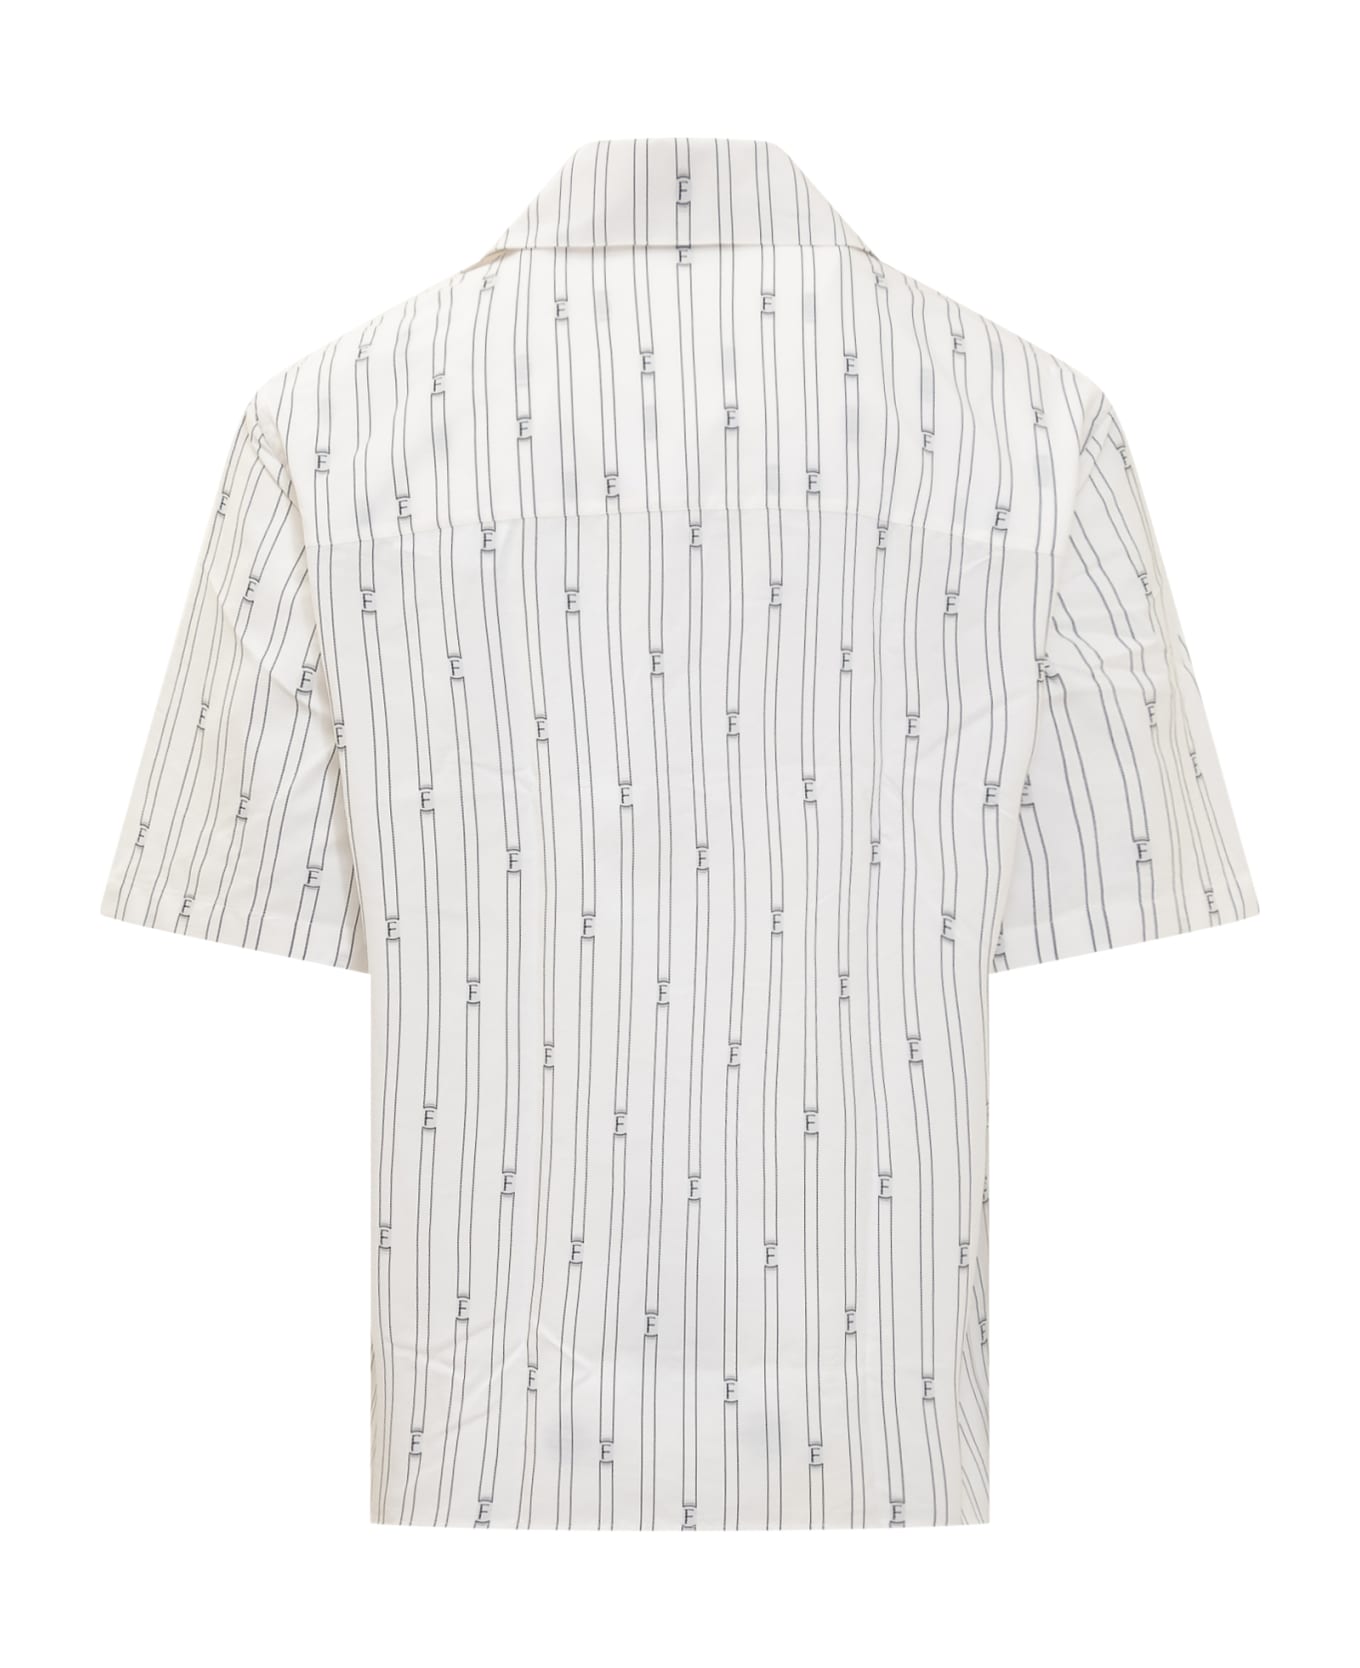 Ferragamo F Shirt - OPTIC WHITE/NERO シャツ